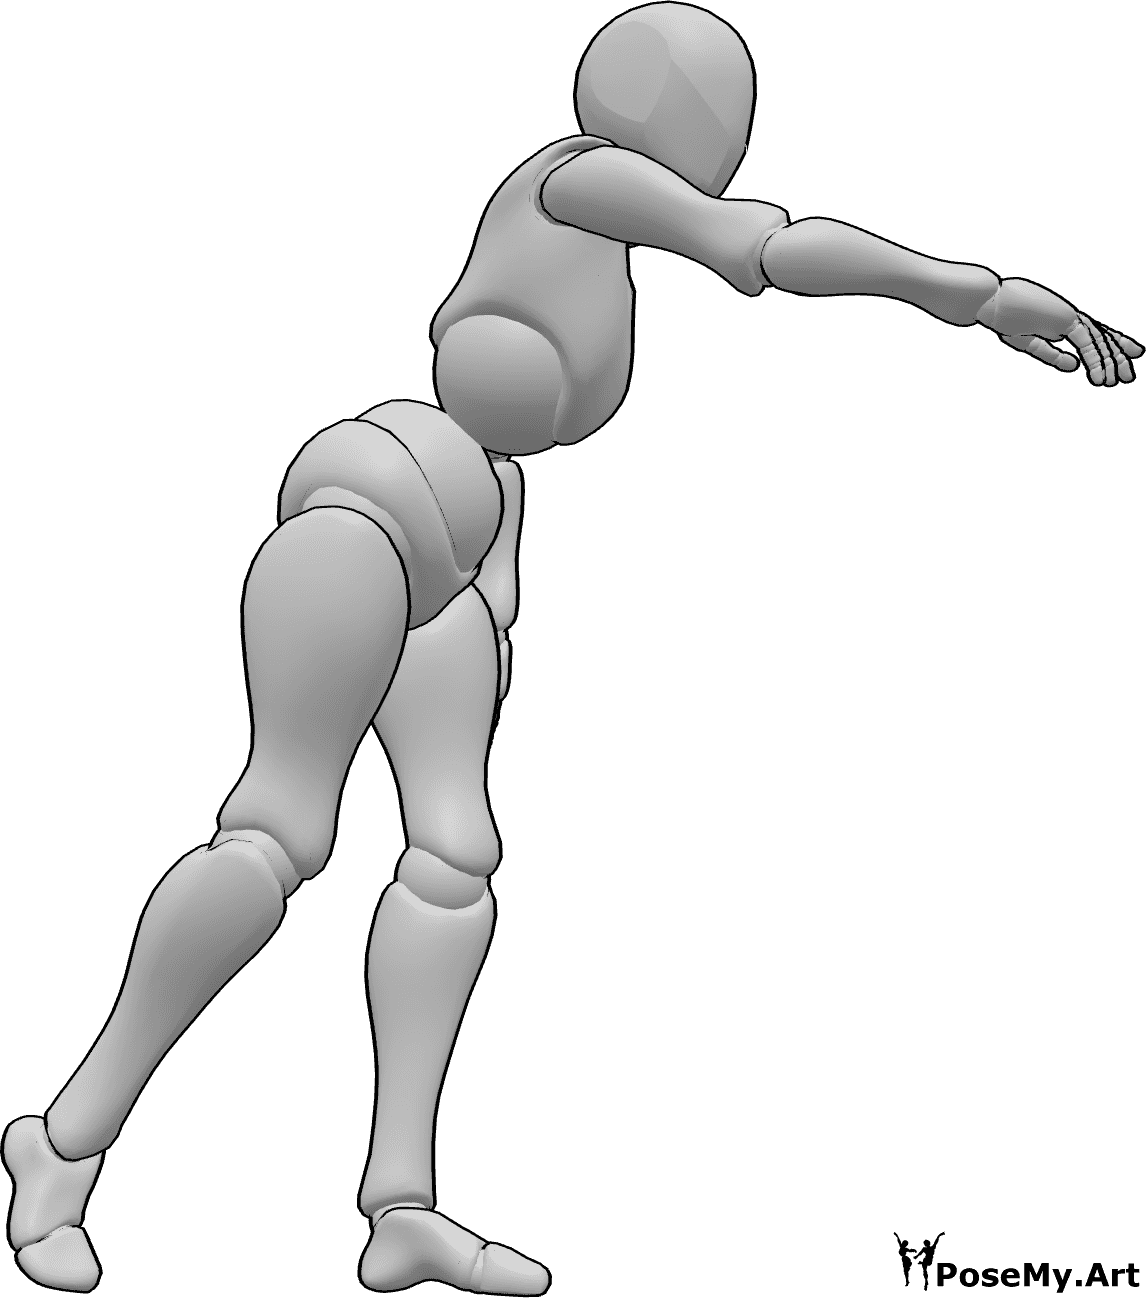 Referencia de poses- Postura a la altura de la cintura - Una mujer coge algo a la altura de la cintura, se inclina hacia delante y extiende la mano derecha.